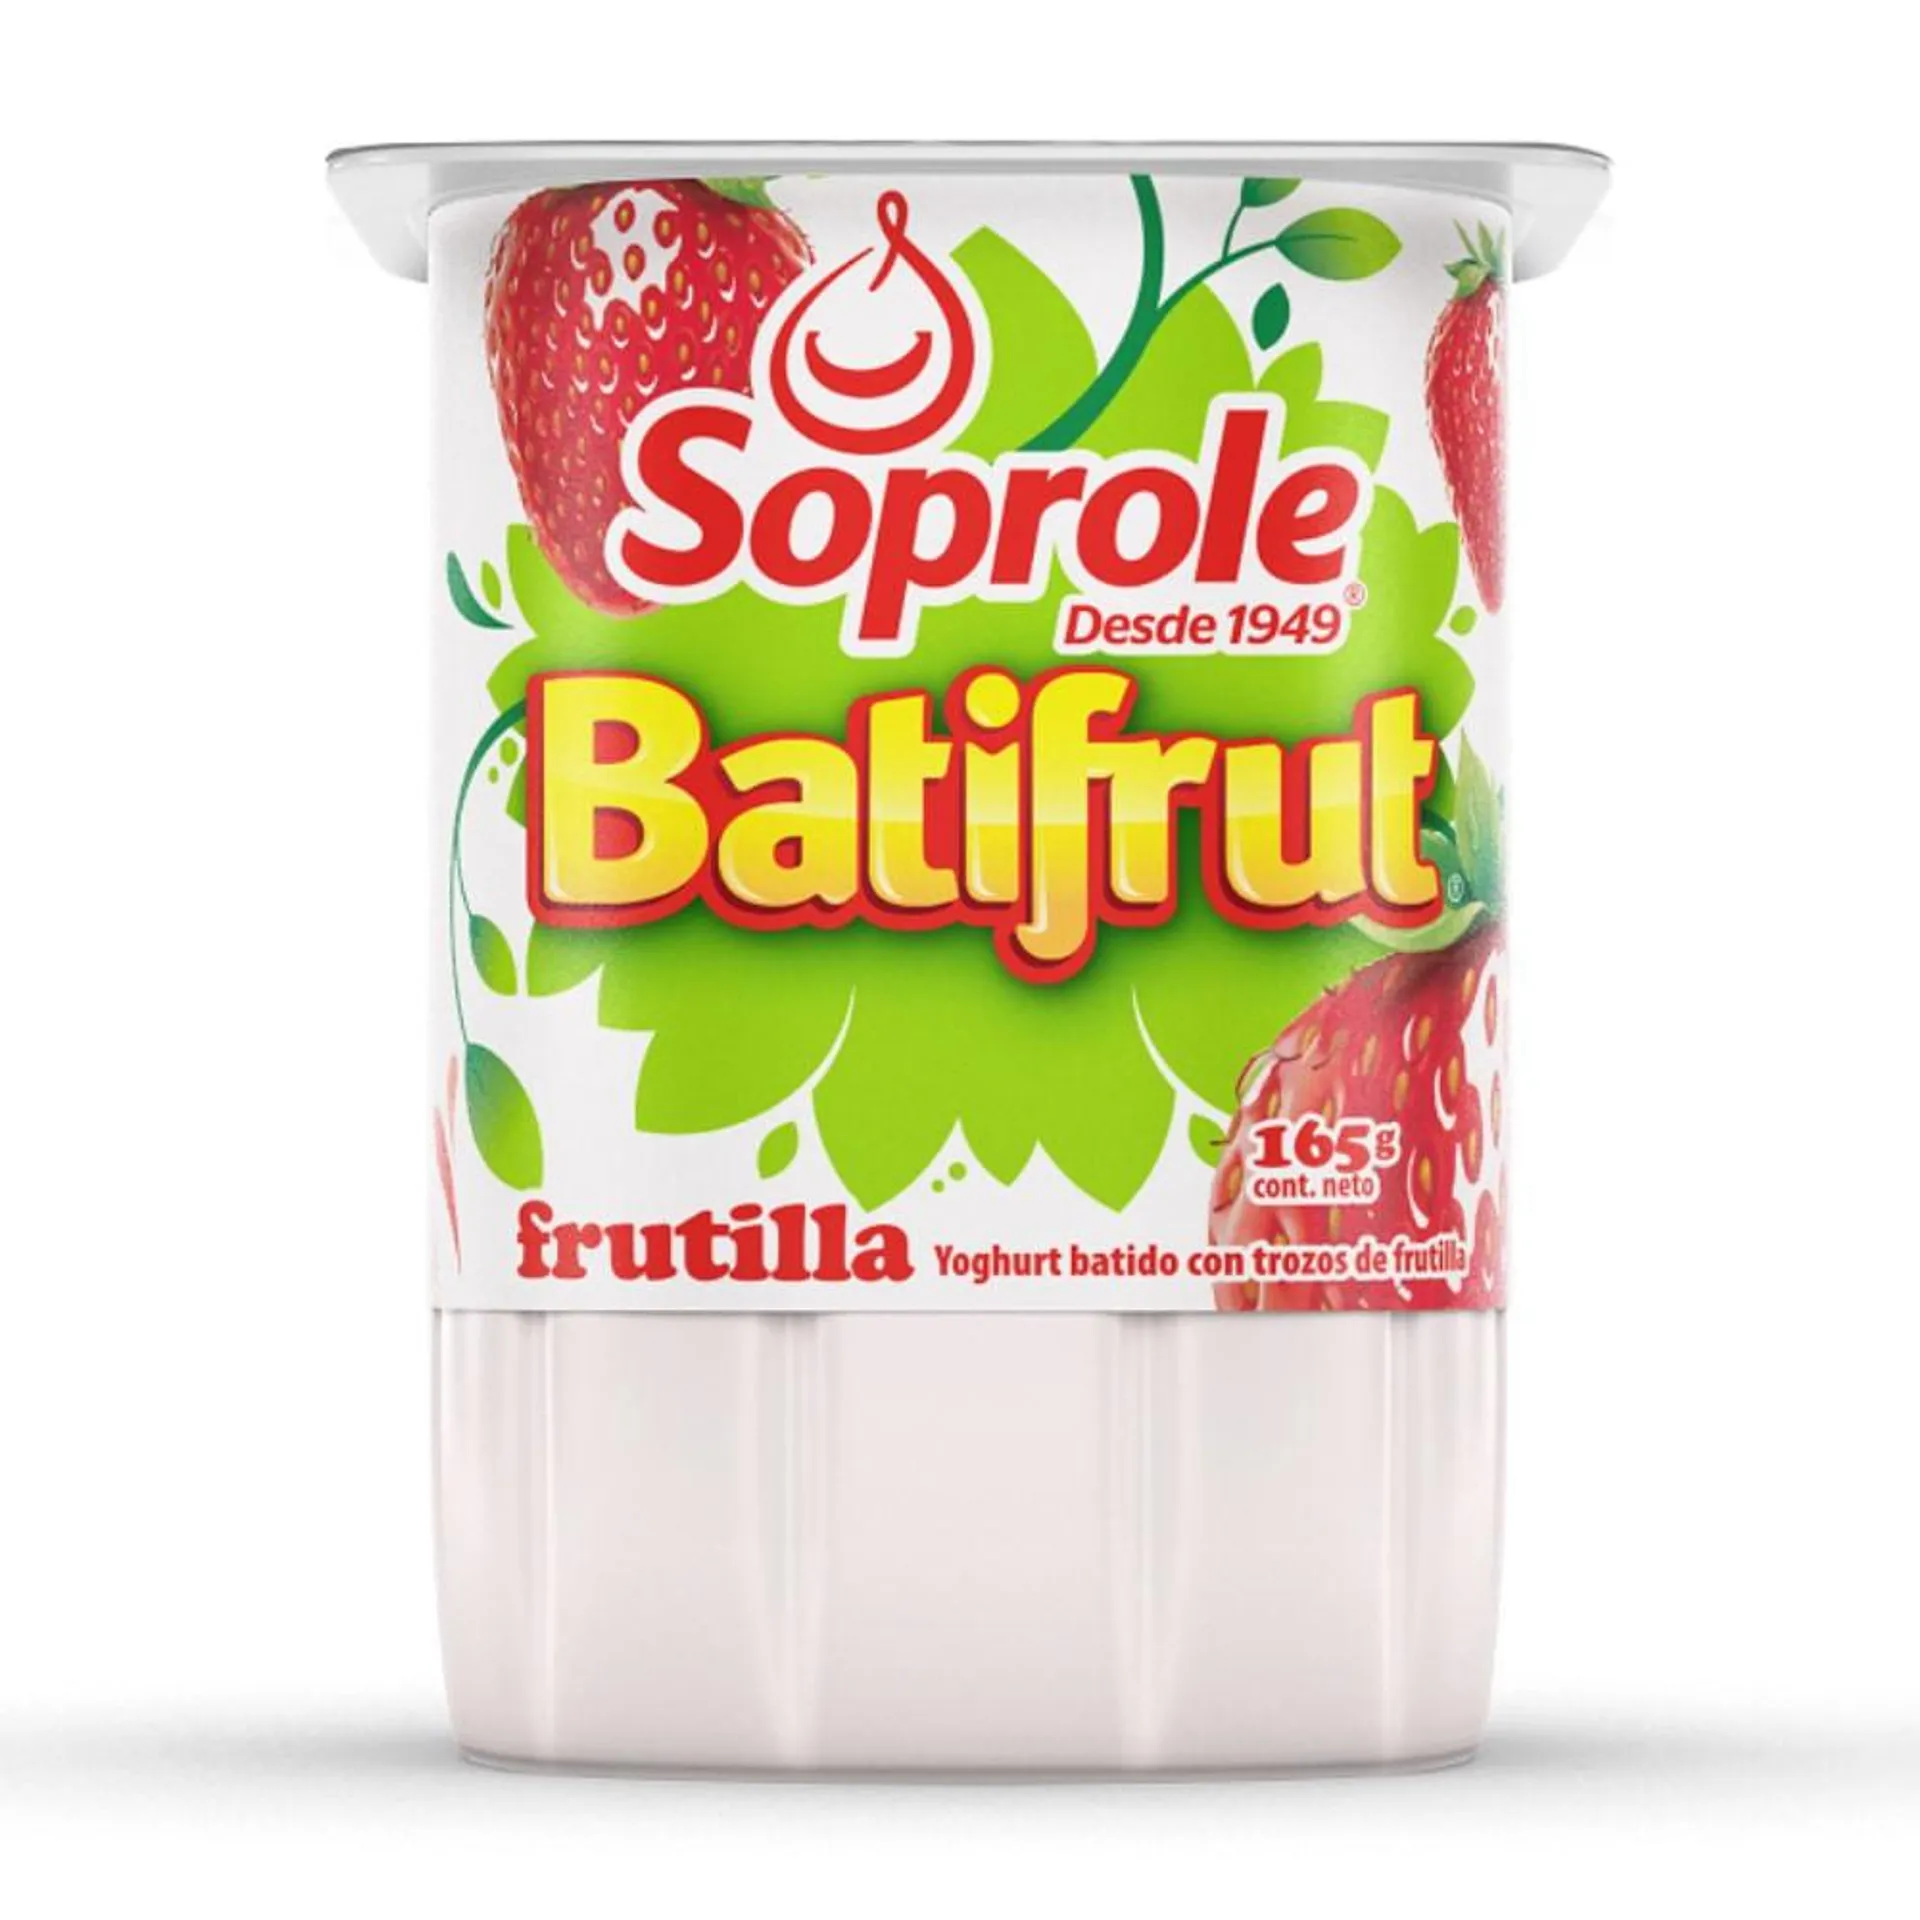 Yoghurt Soprole Batifrut sabor frutilla con trozos de fruta pote 165 g